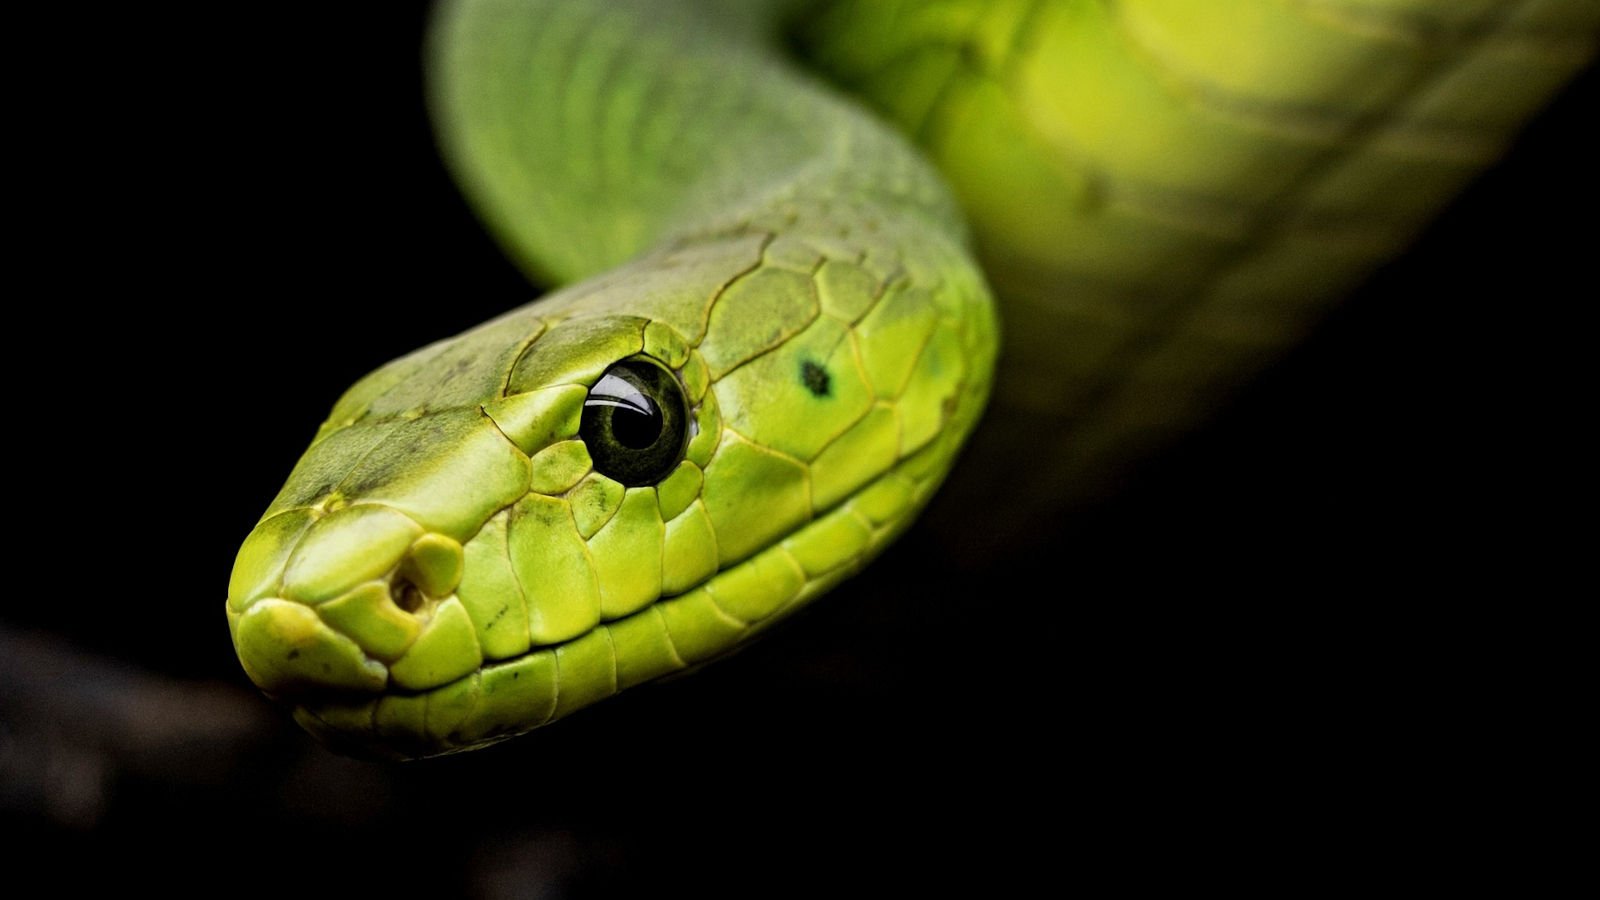 Snake Amazing Facts